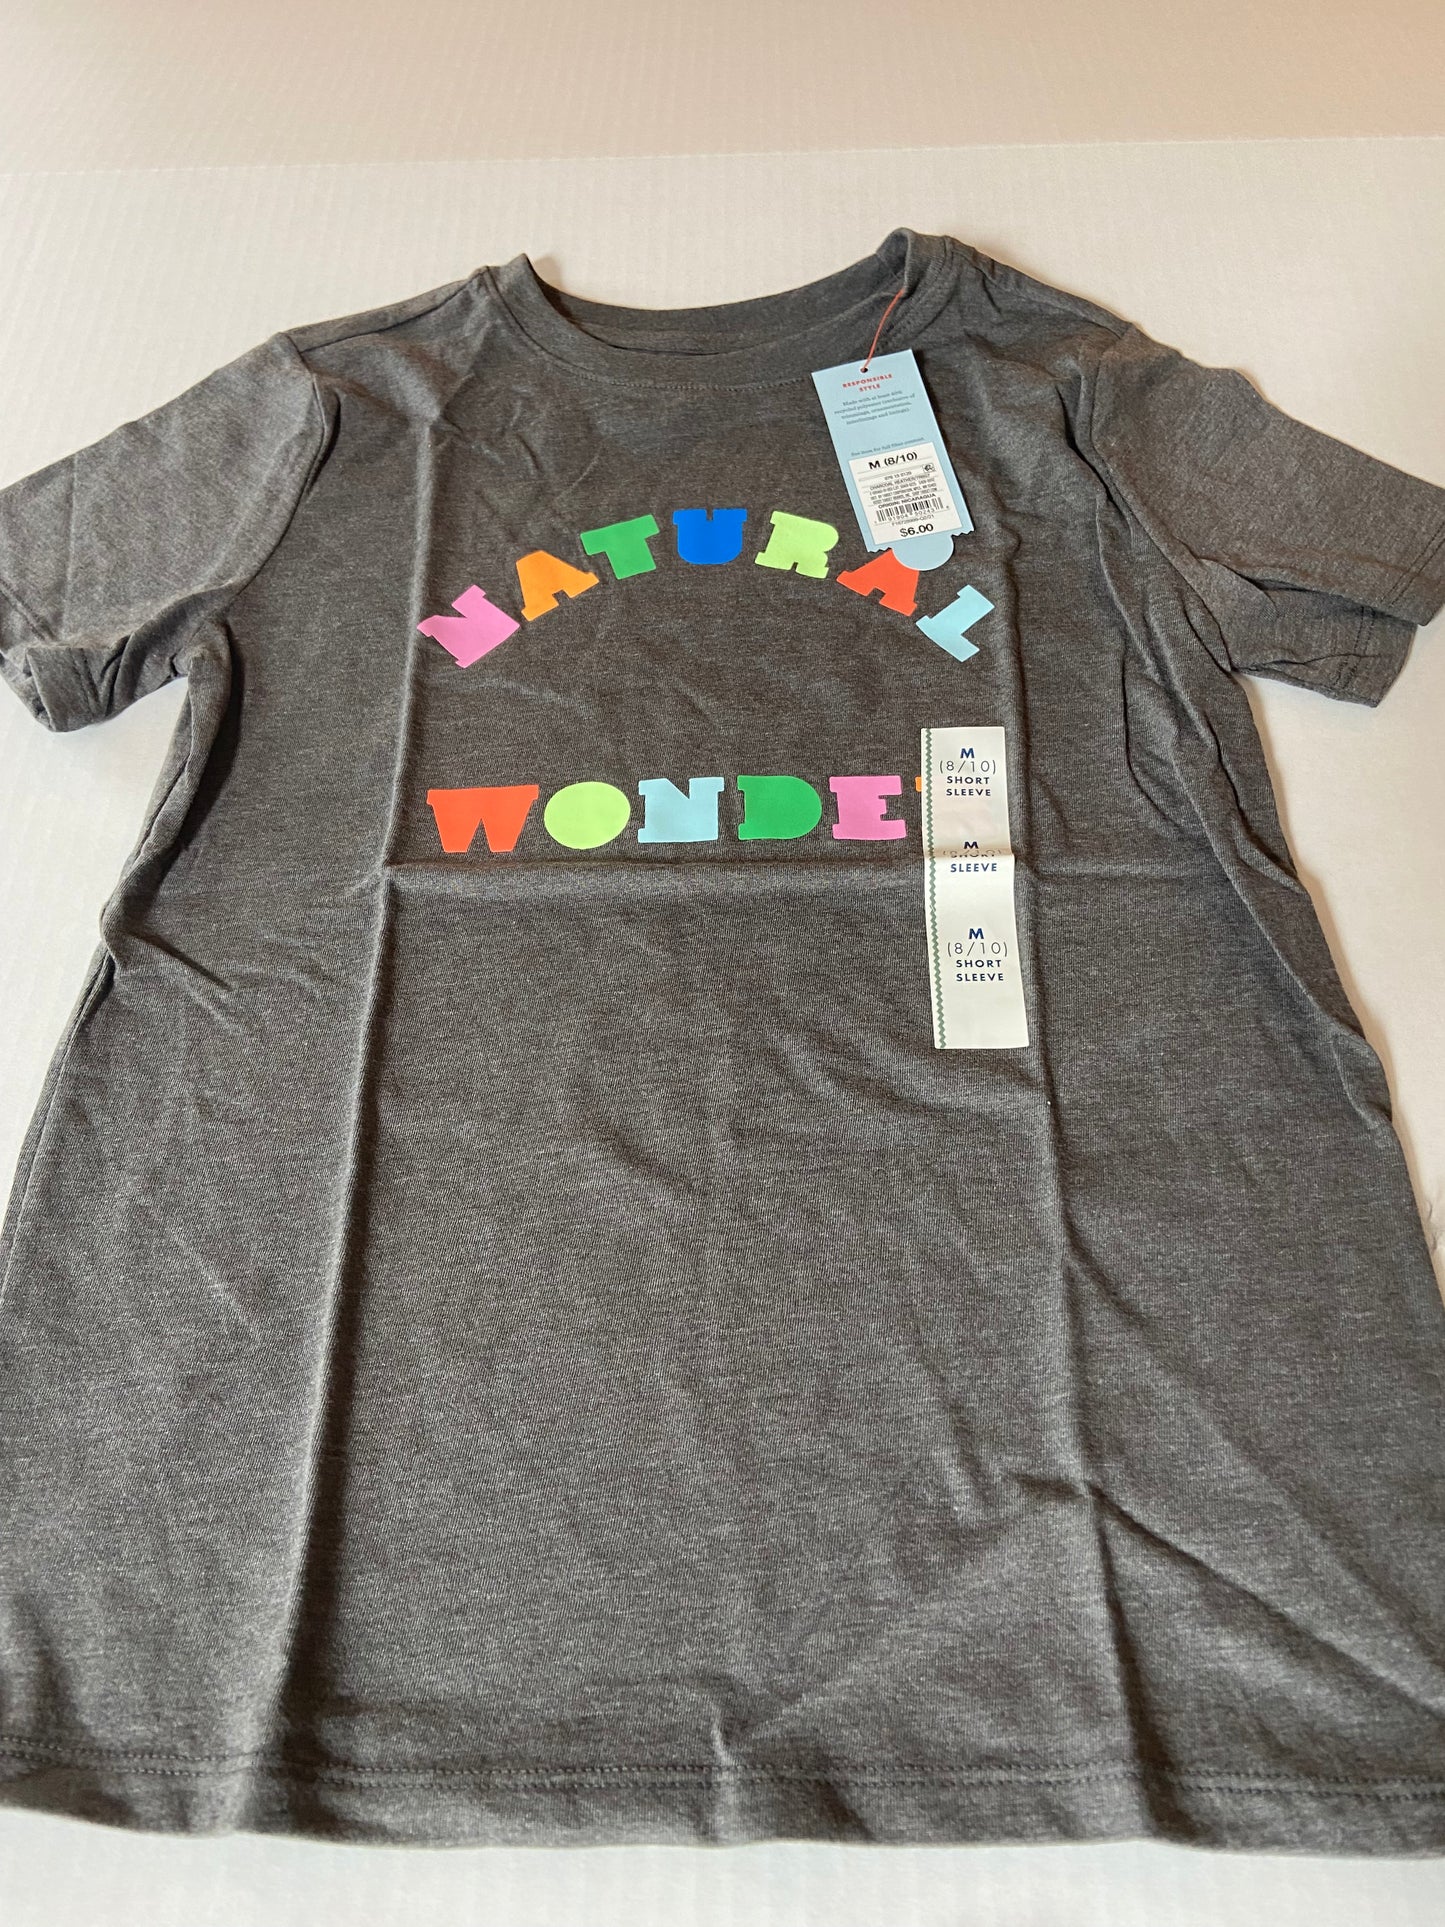 NWT, Cat & Jack Natural Wonder shirt, Size Small, 6/7